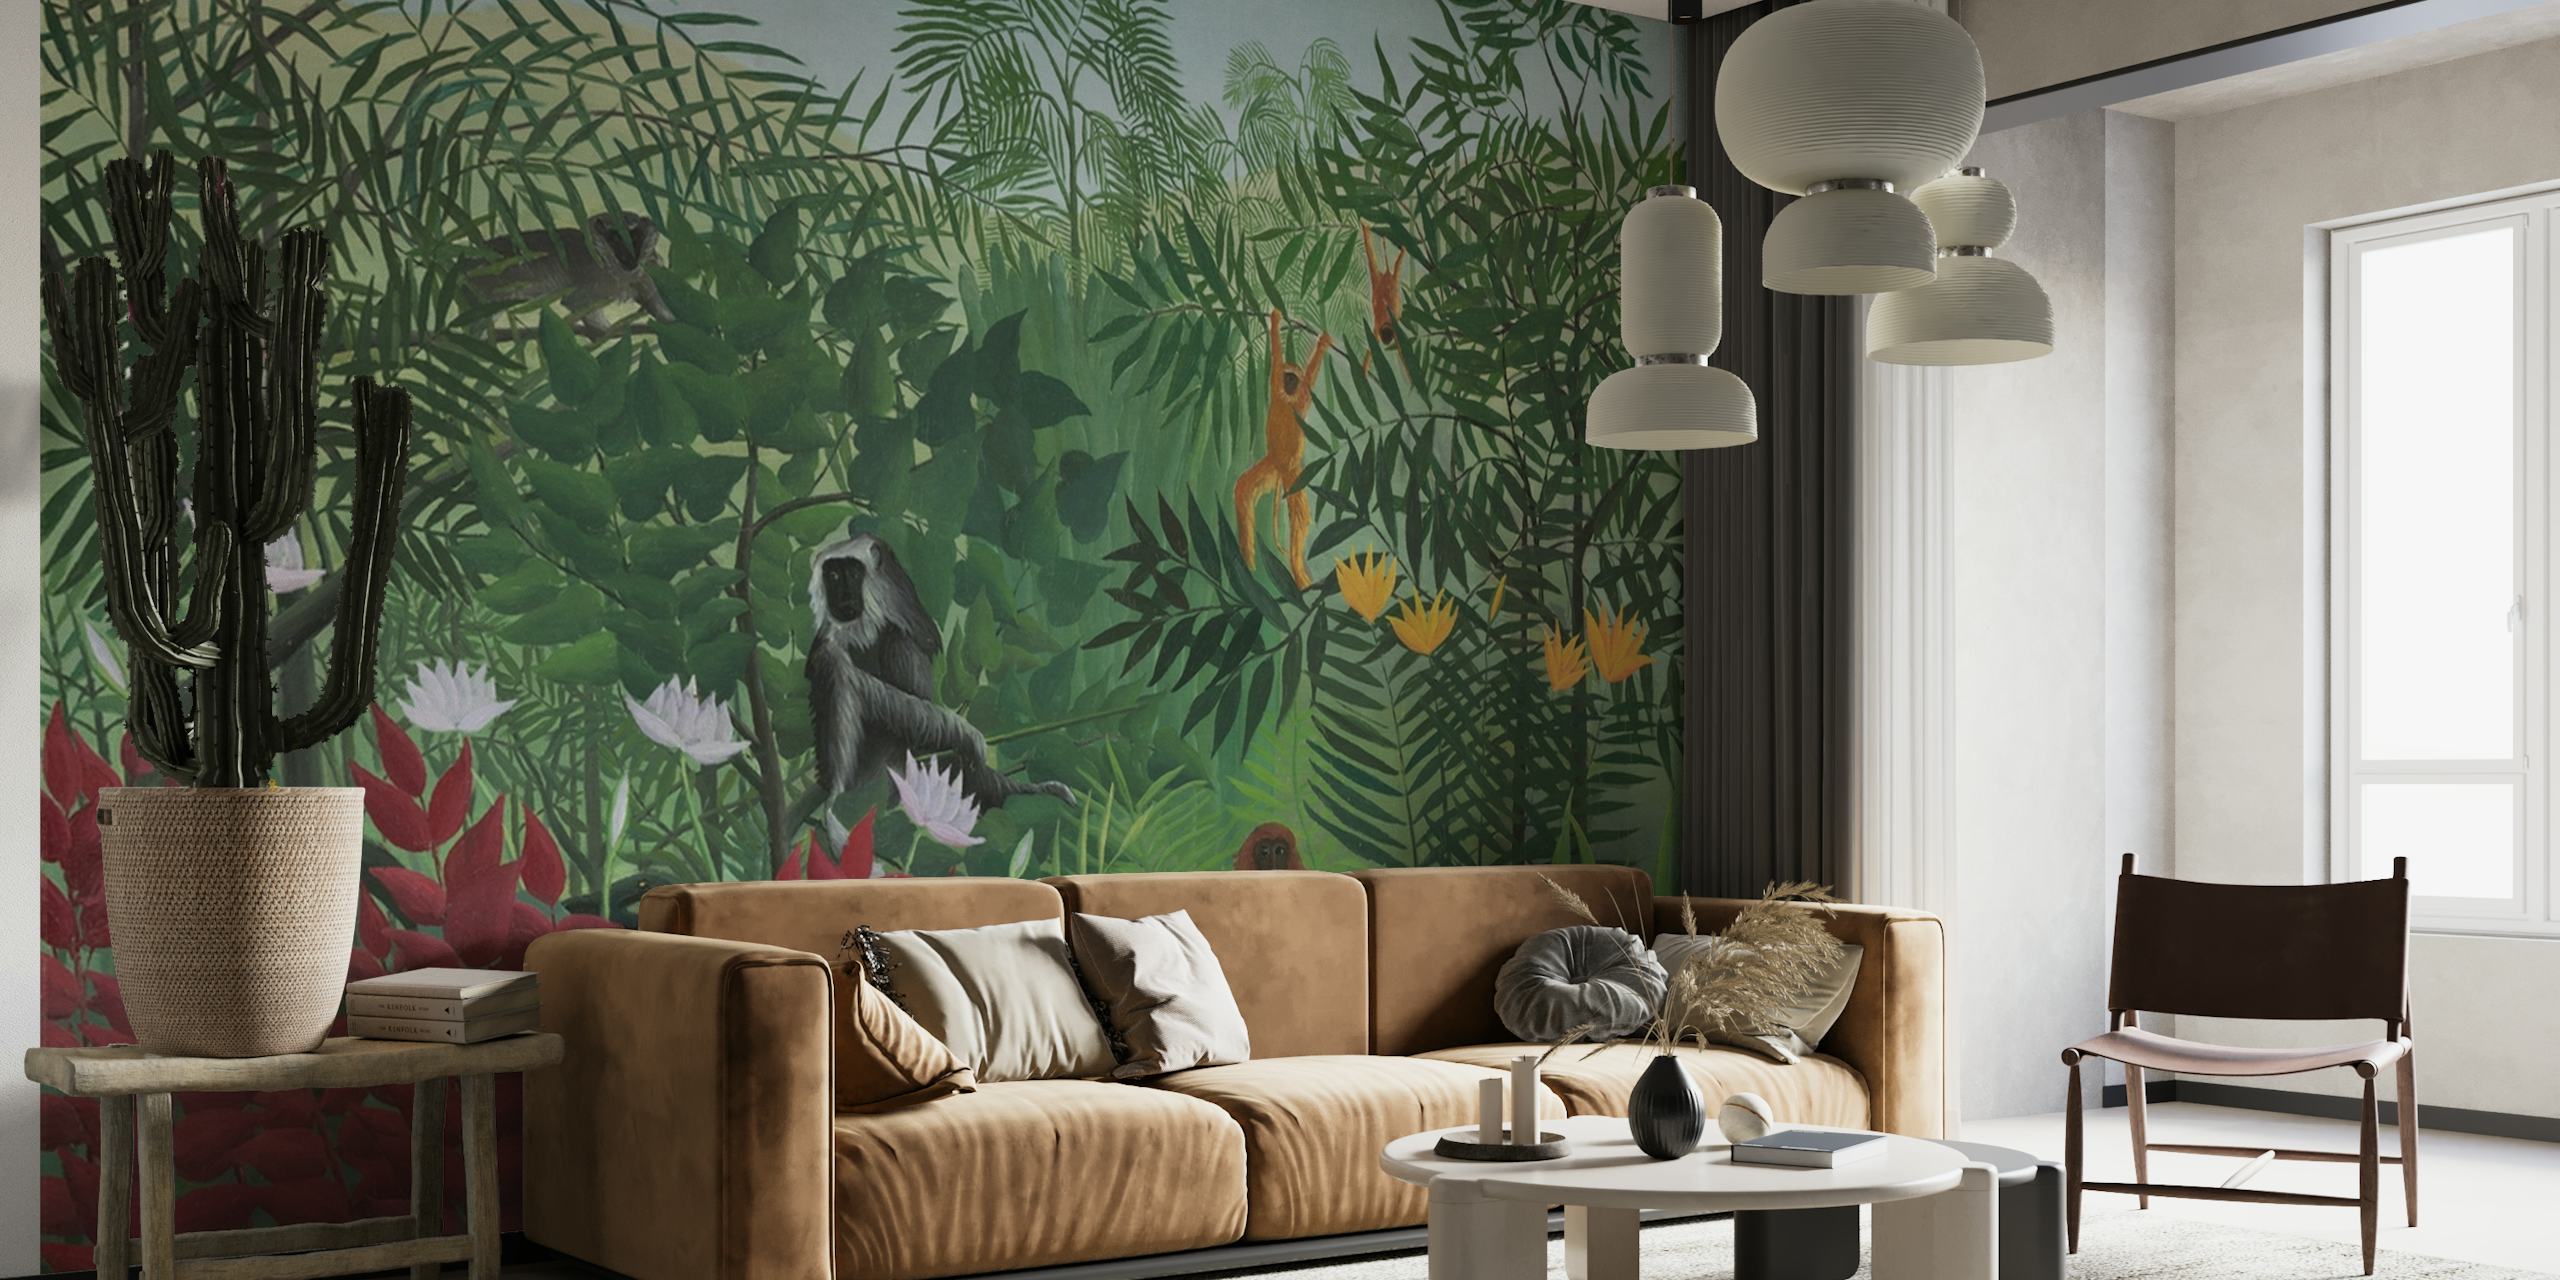 Fototapeta przedstawiająca scenę lasu tropikalnego z małpami, inspirowana stylem artystycznym Henriego Rousseau.